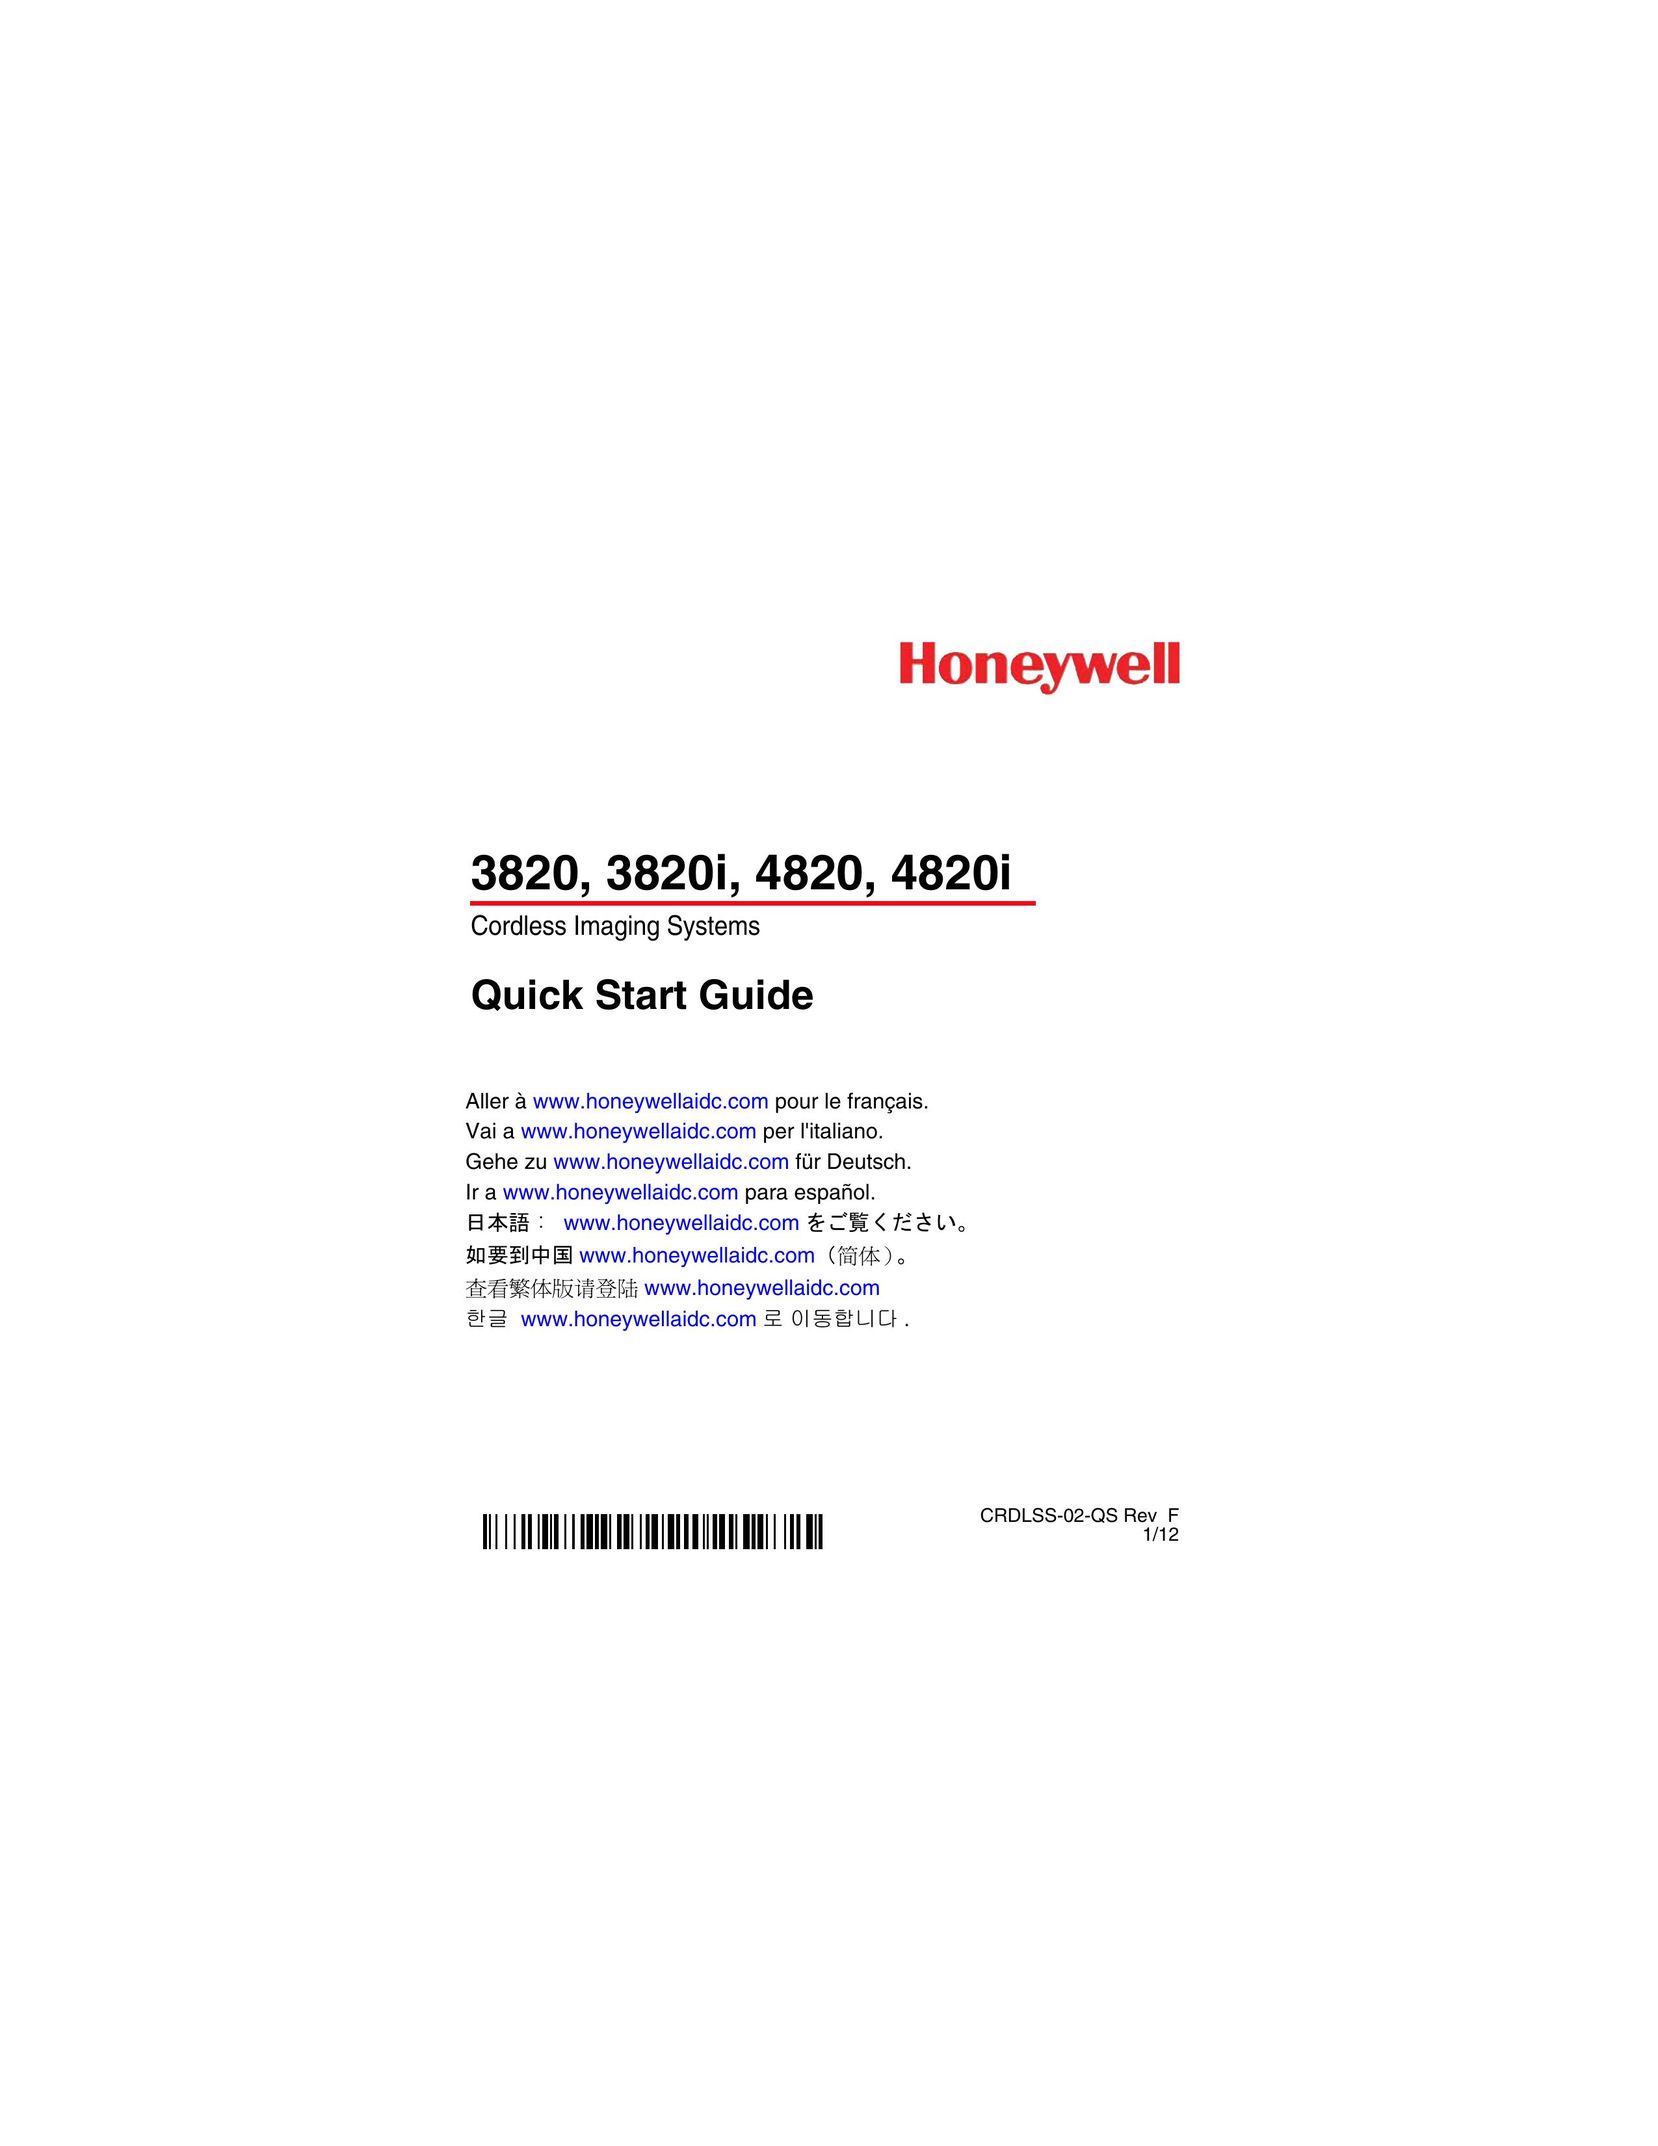 Honeywell 3820i Scanner User Manual